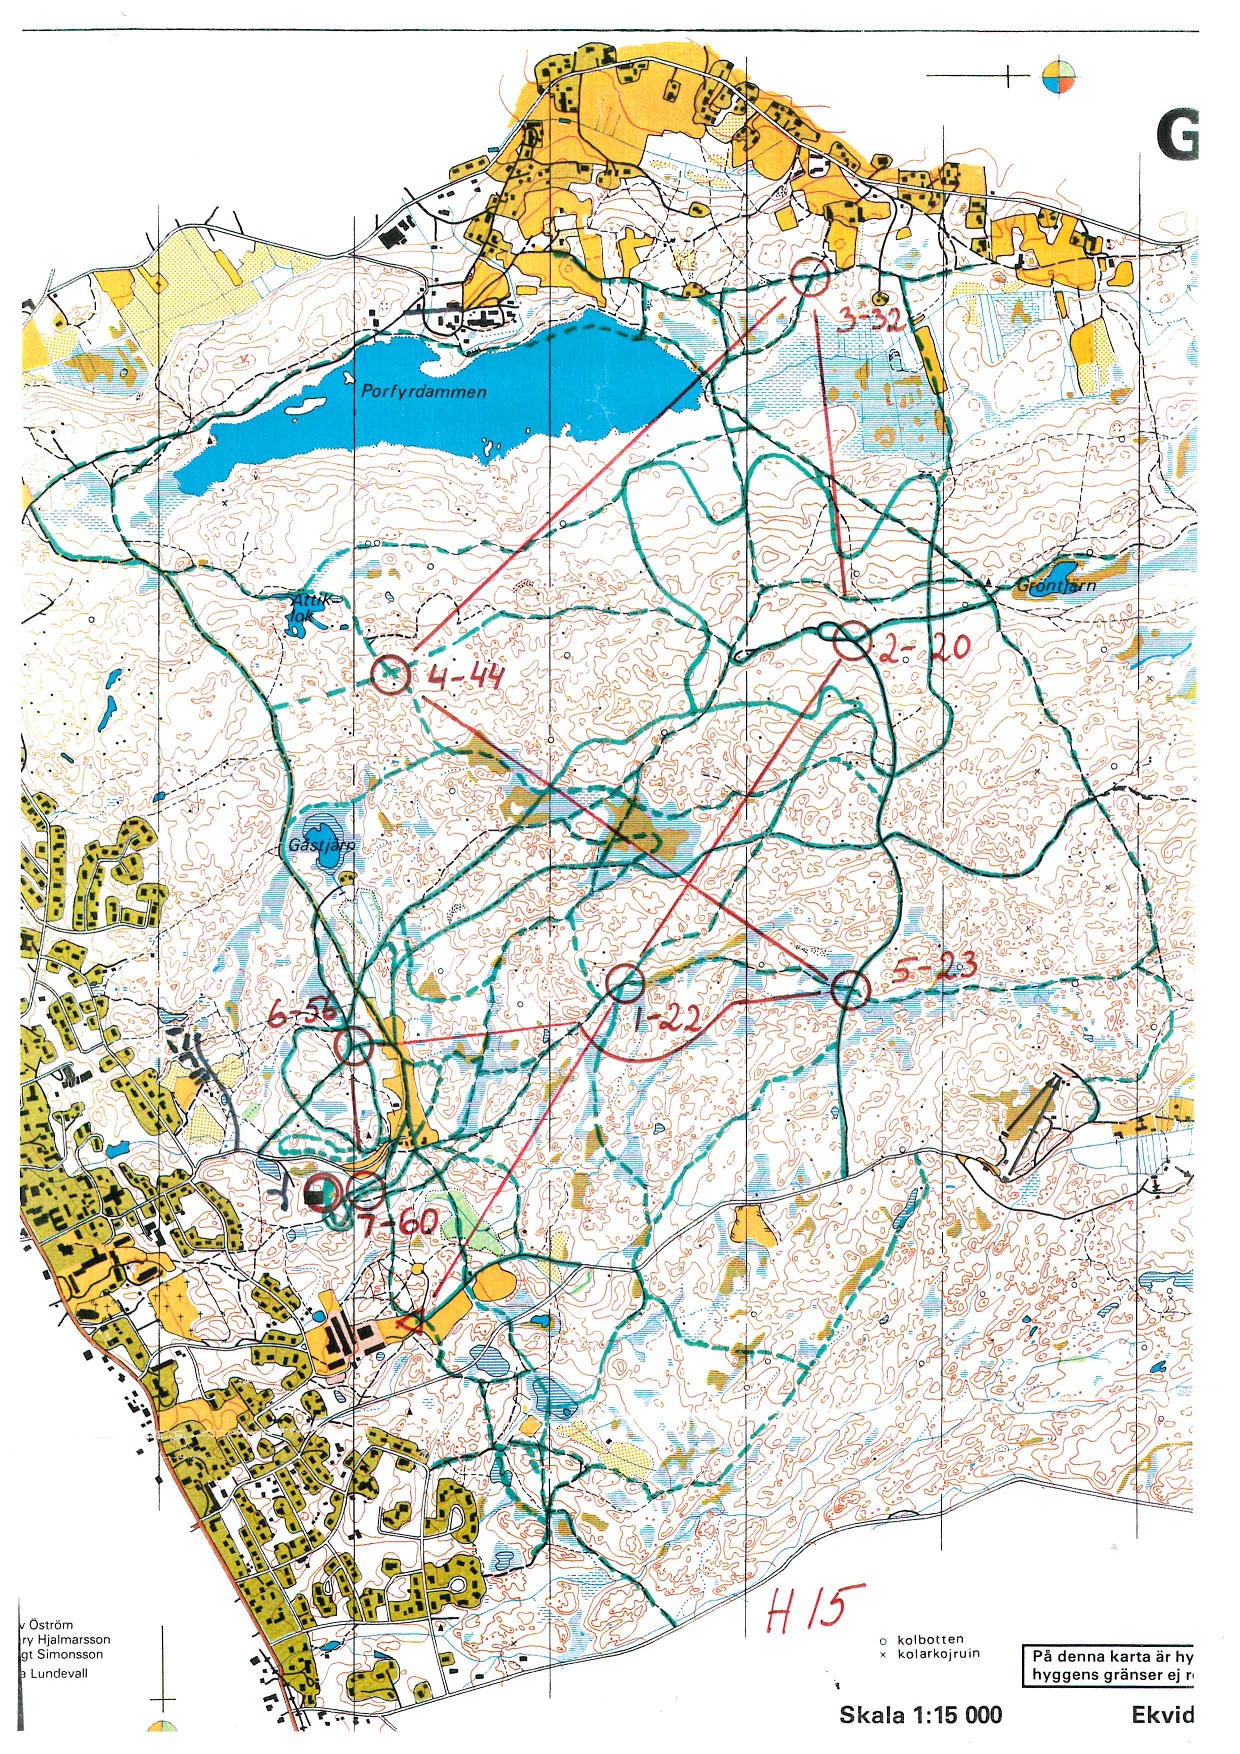 USM, Skid-O, Älvdalen (19/01/1992)